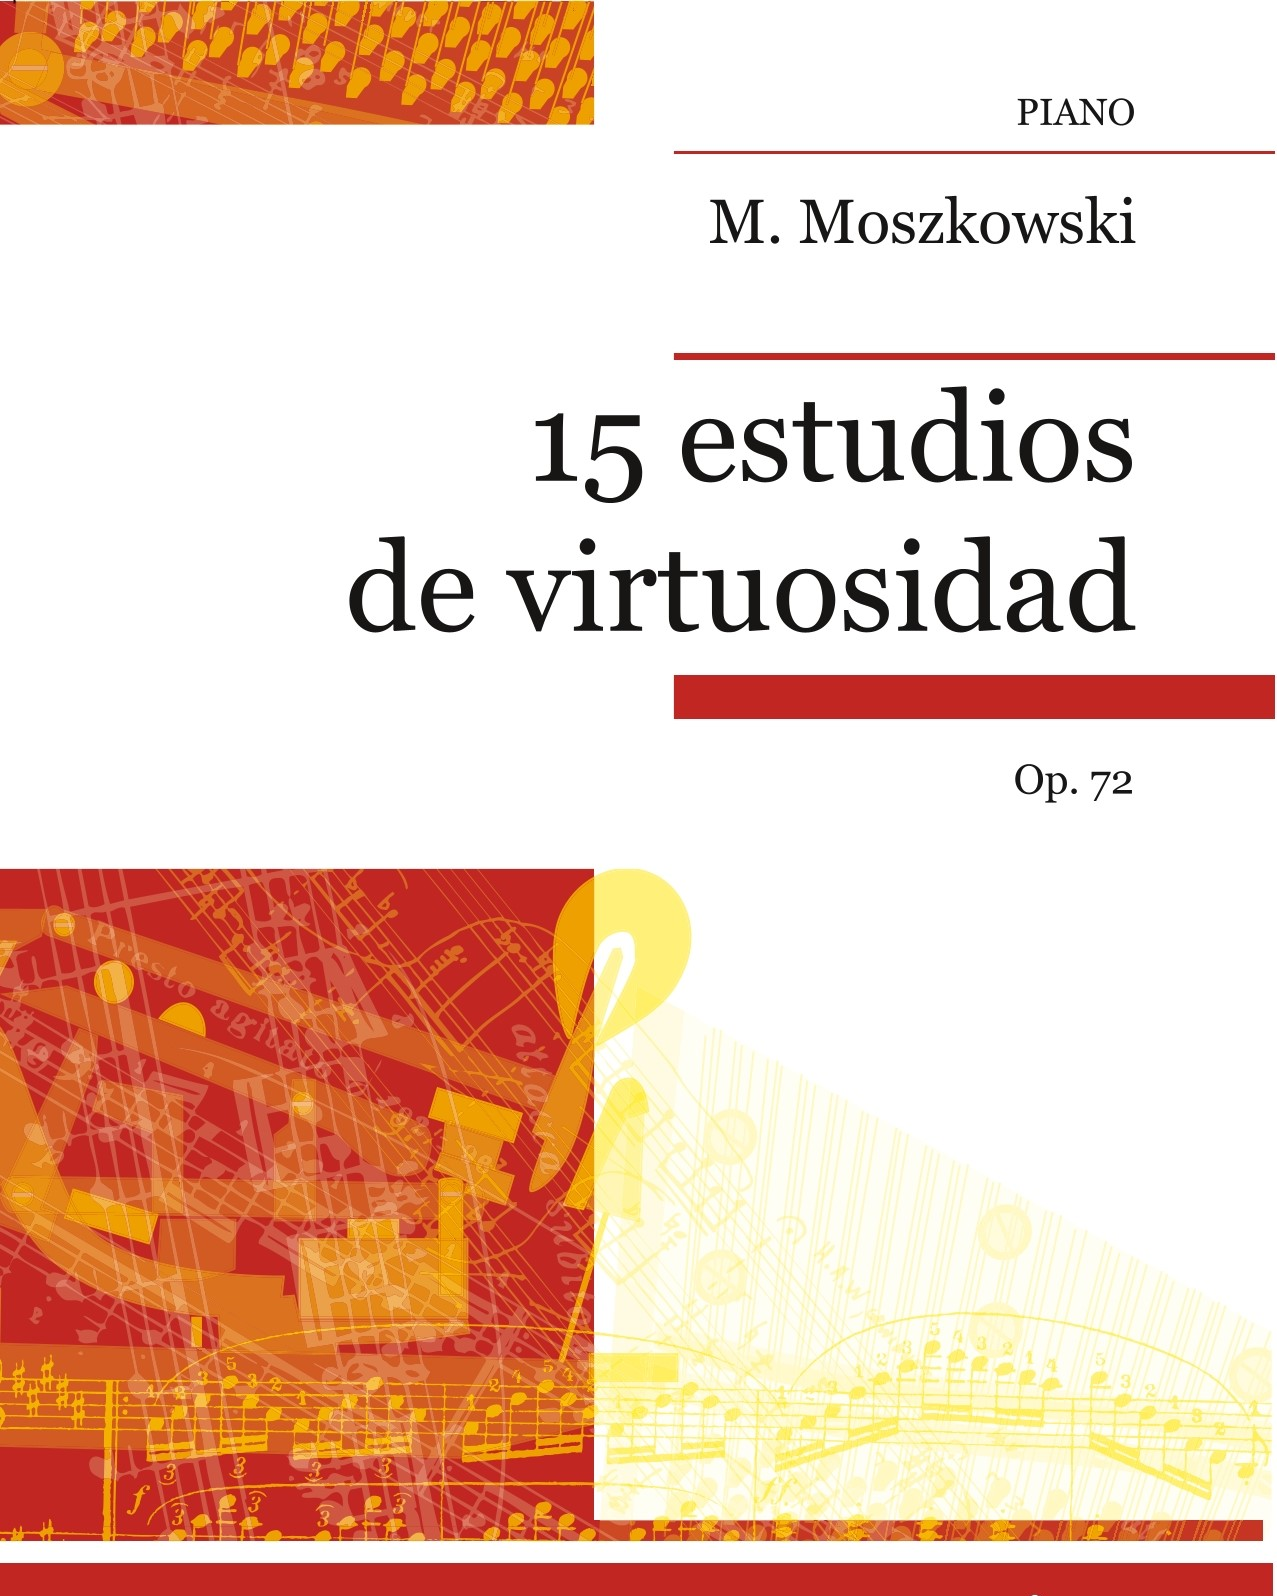 15 Virtuoso Studies, op. 72